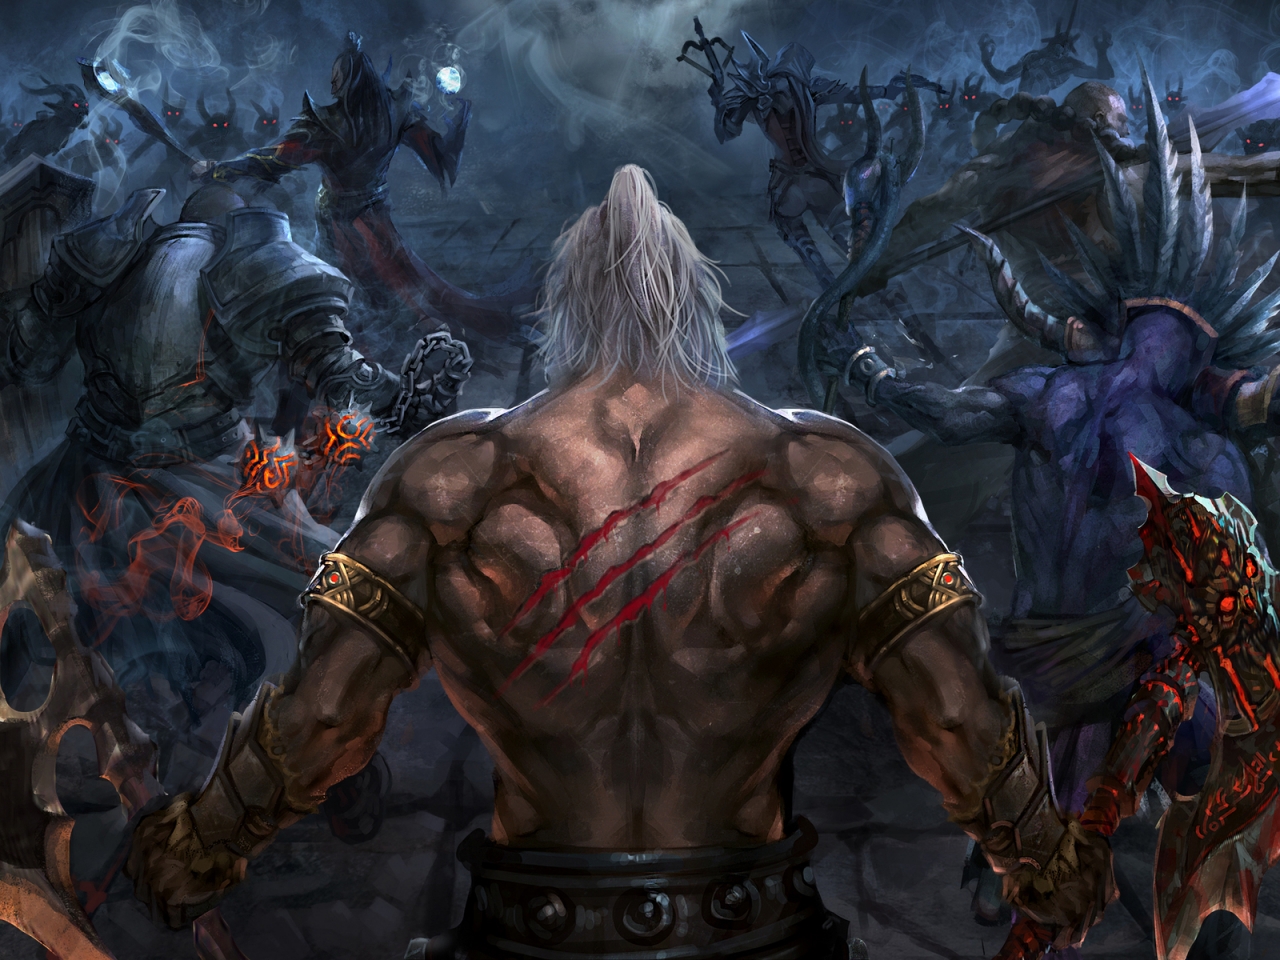 Diablo III Reaper of Souls for 1280 x 960 resolution